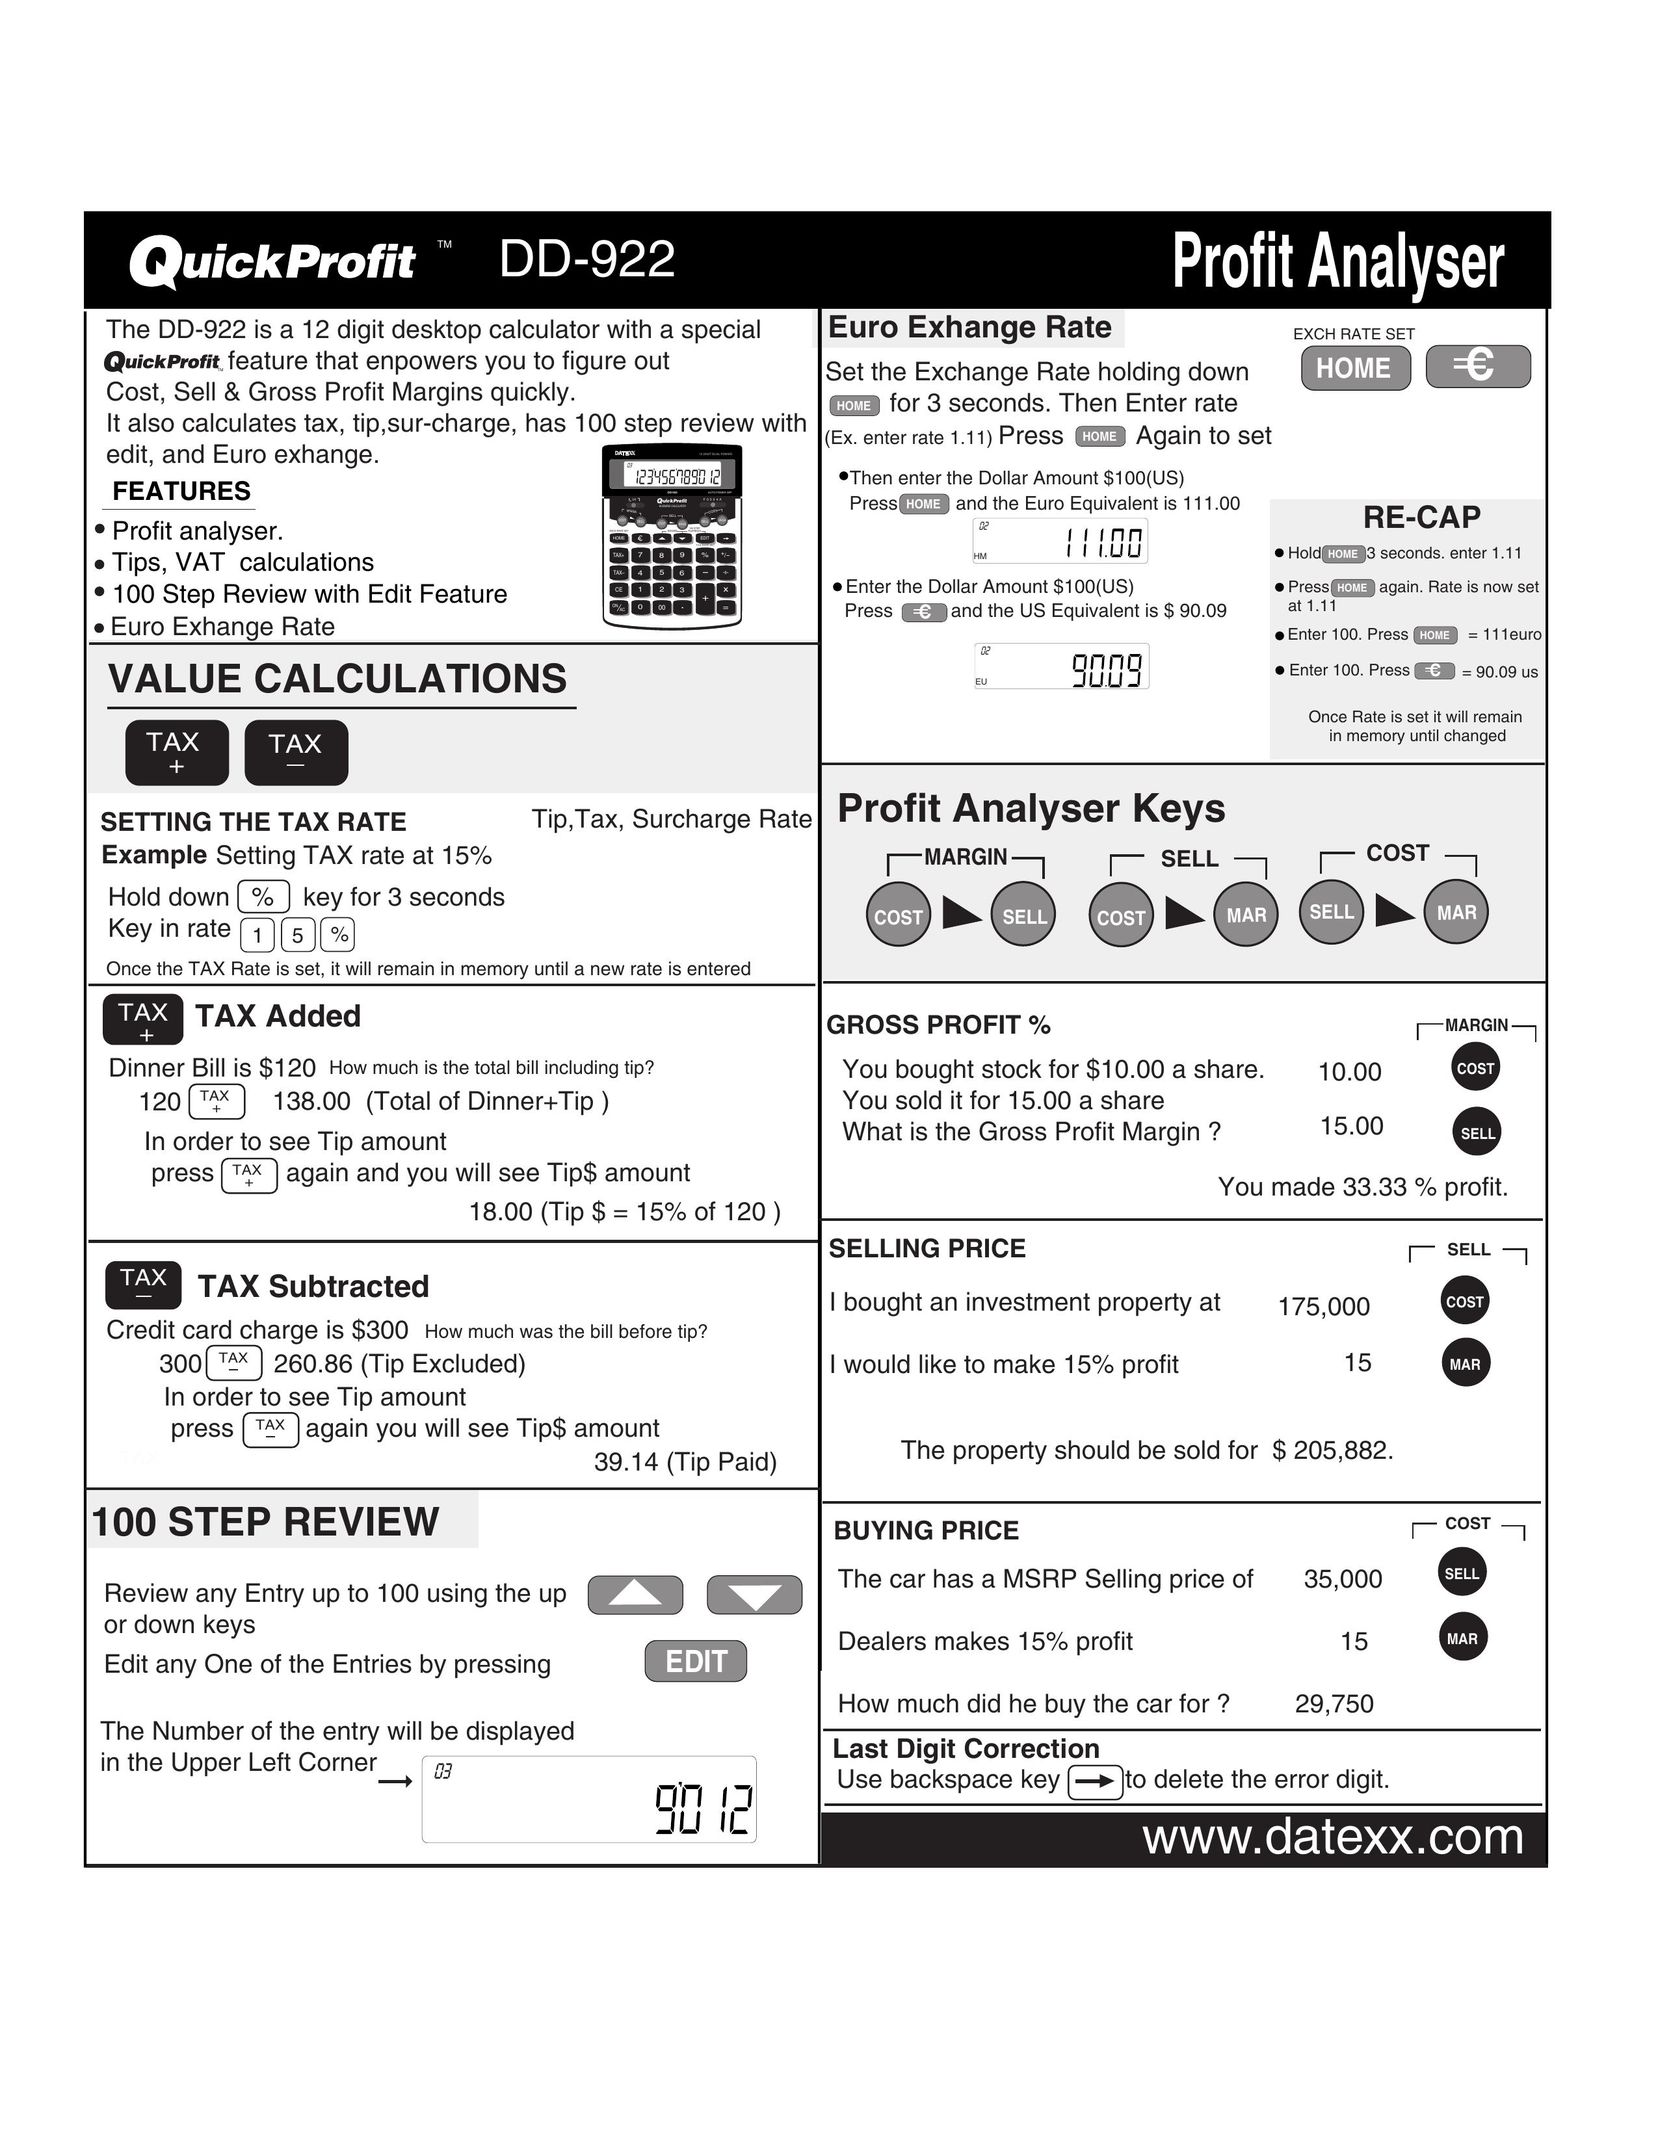 Datexx DD-922 Calculator User Manual